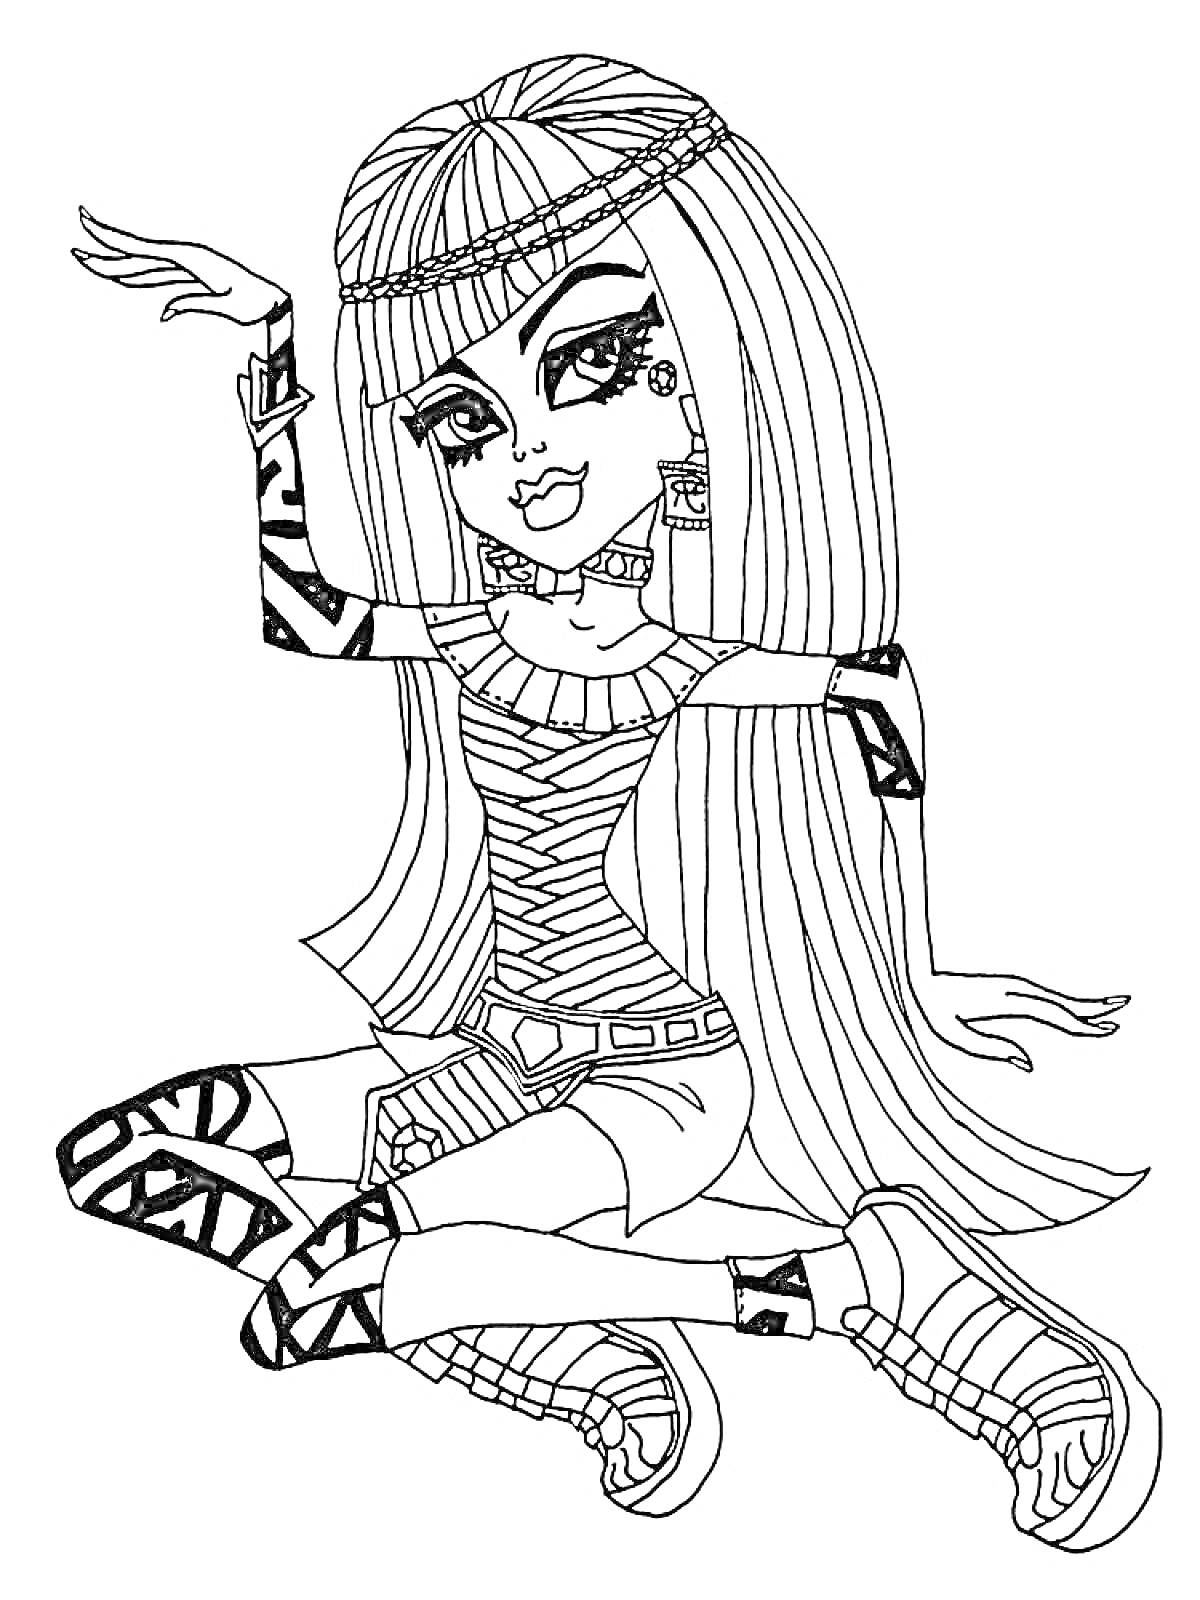 Девушка из Монстр Хай с длинными волосами, одетая в короткие шорты, топ с узором, украшения и обувь с рисунками